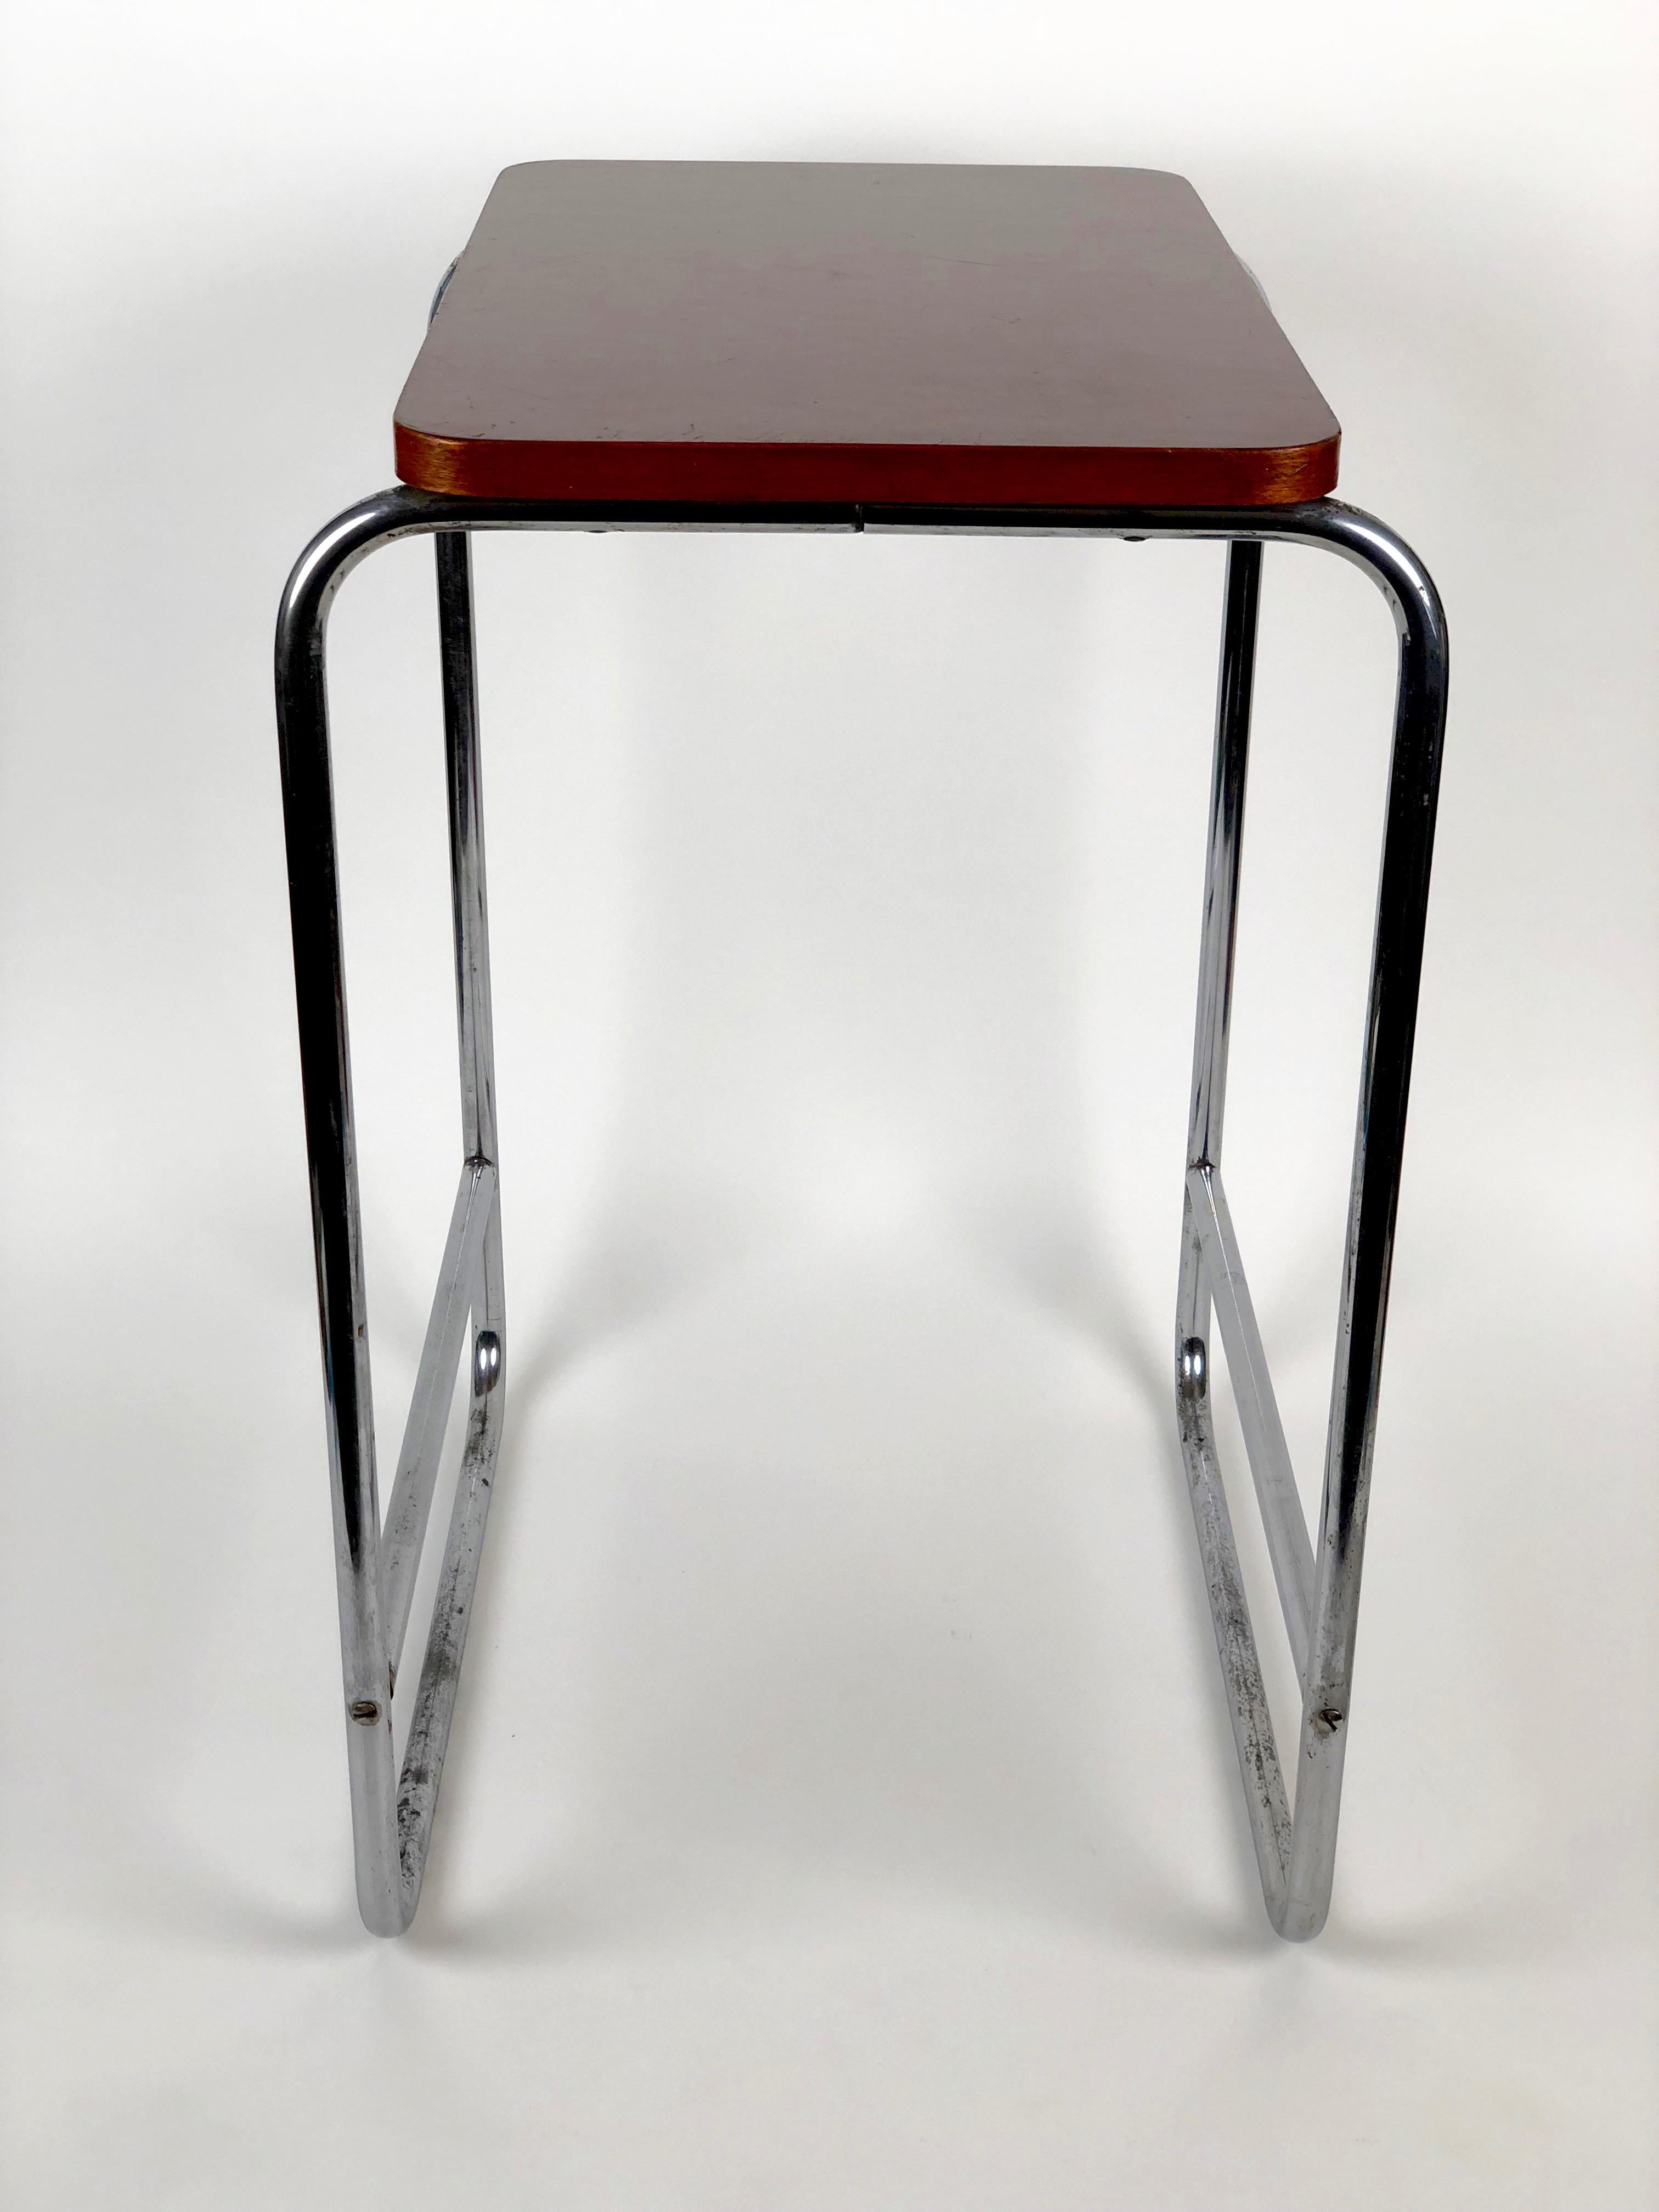 Fabriquée dans les années 1930, cette table est composée d'une base en tube d'acier chromé, d'un plateau en bois avec une finition en bakélite
surface stratifiée. La bakélite est en très bon état et conserve sa surface brillante d'origine. Le